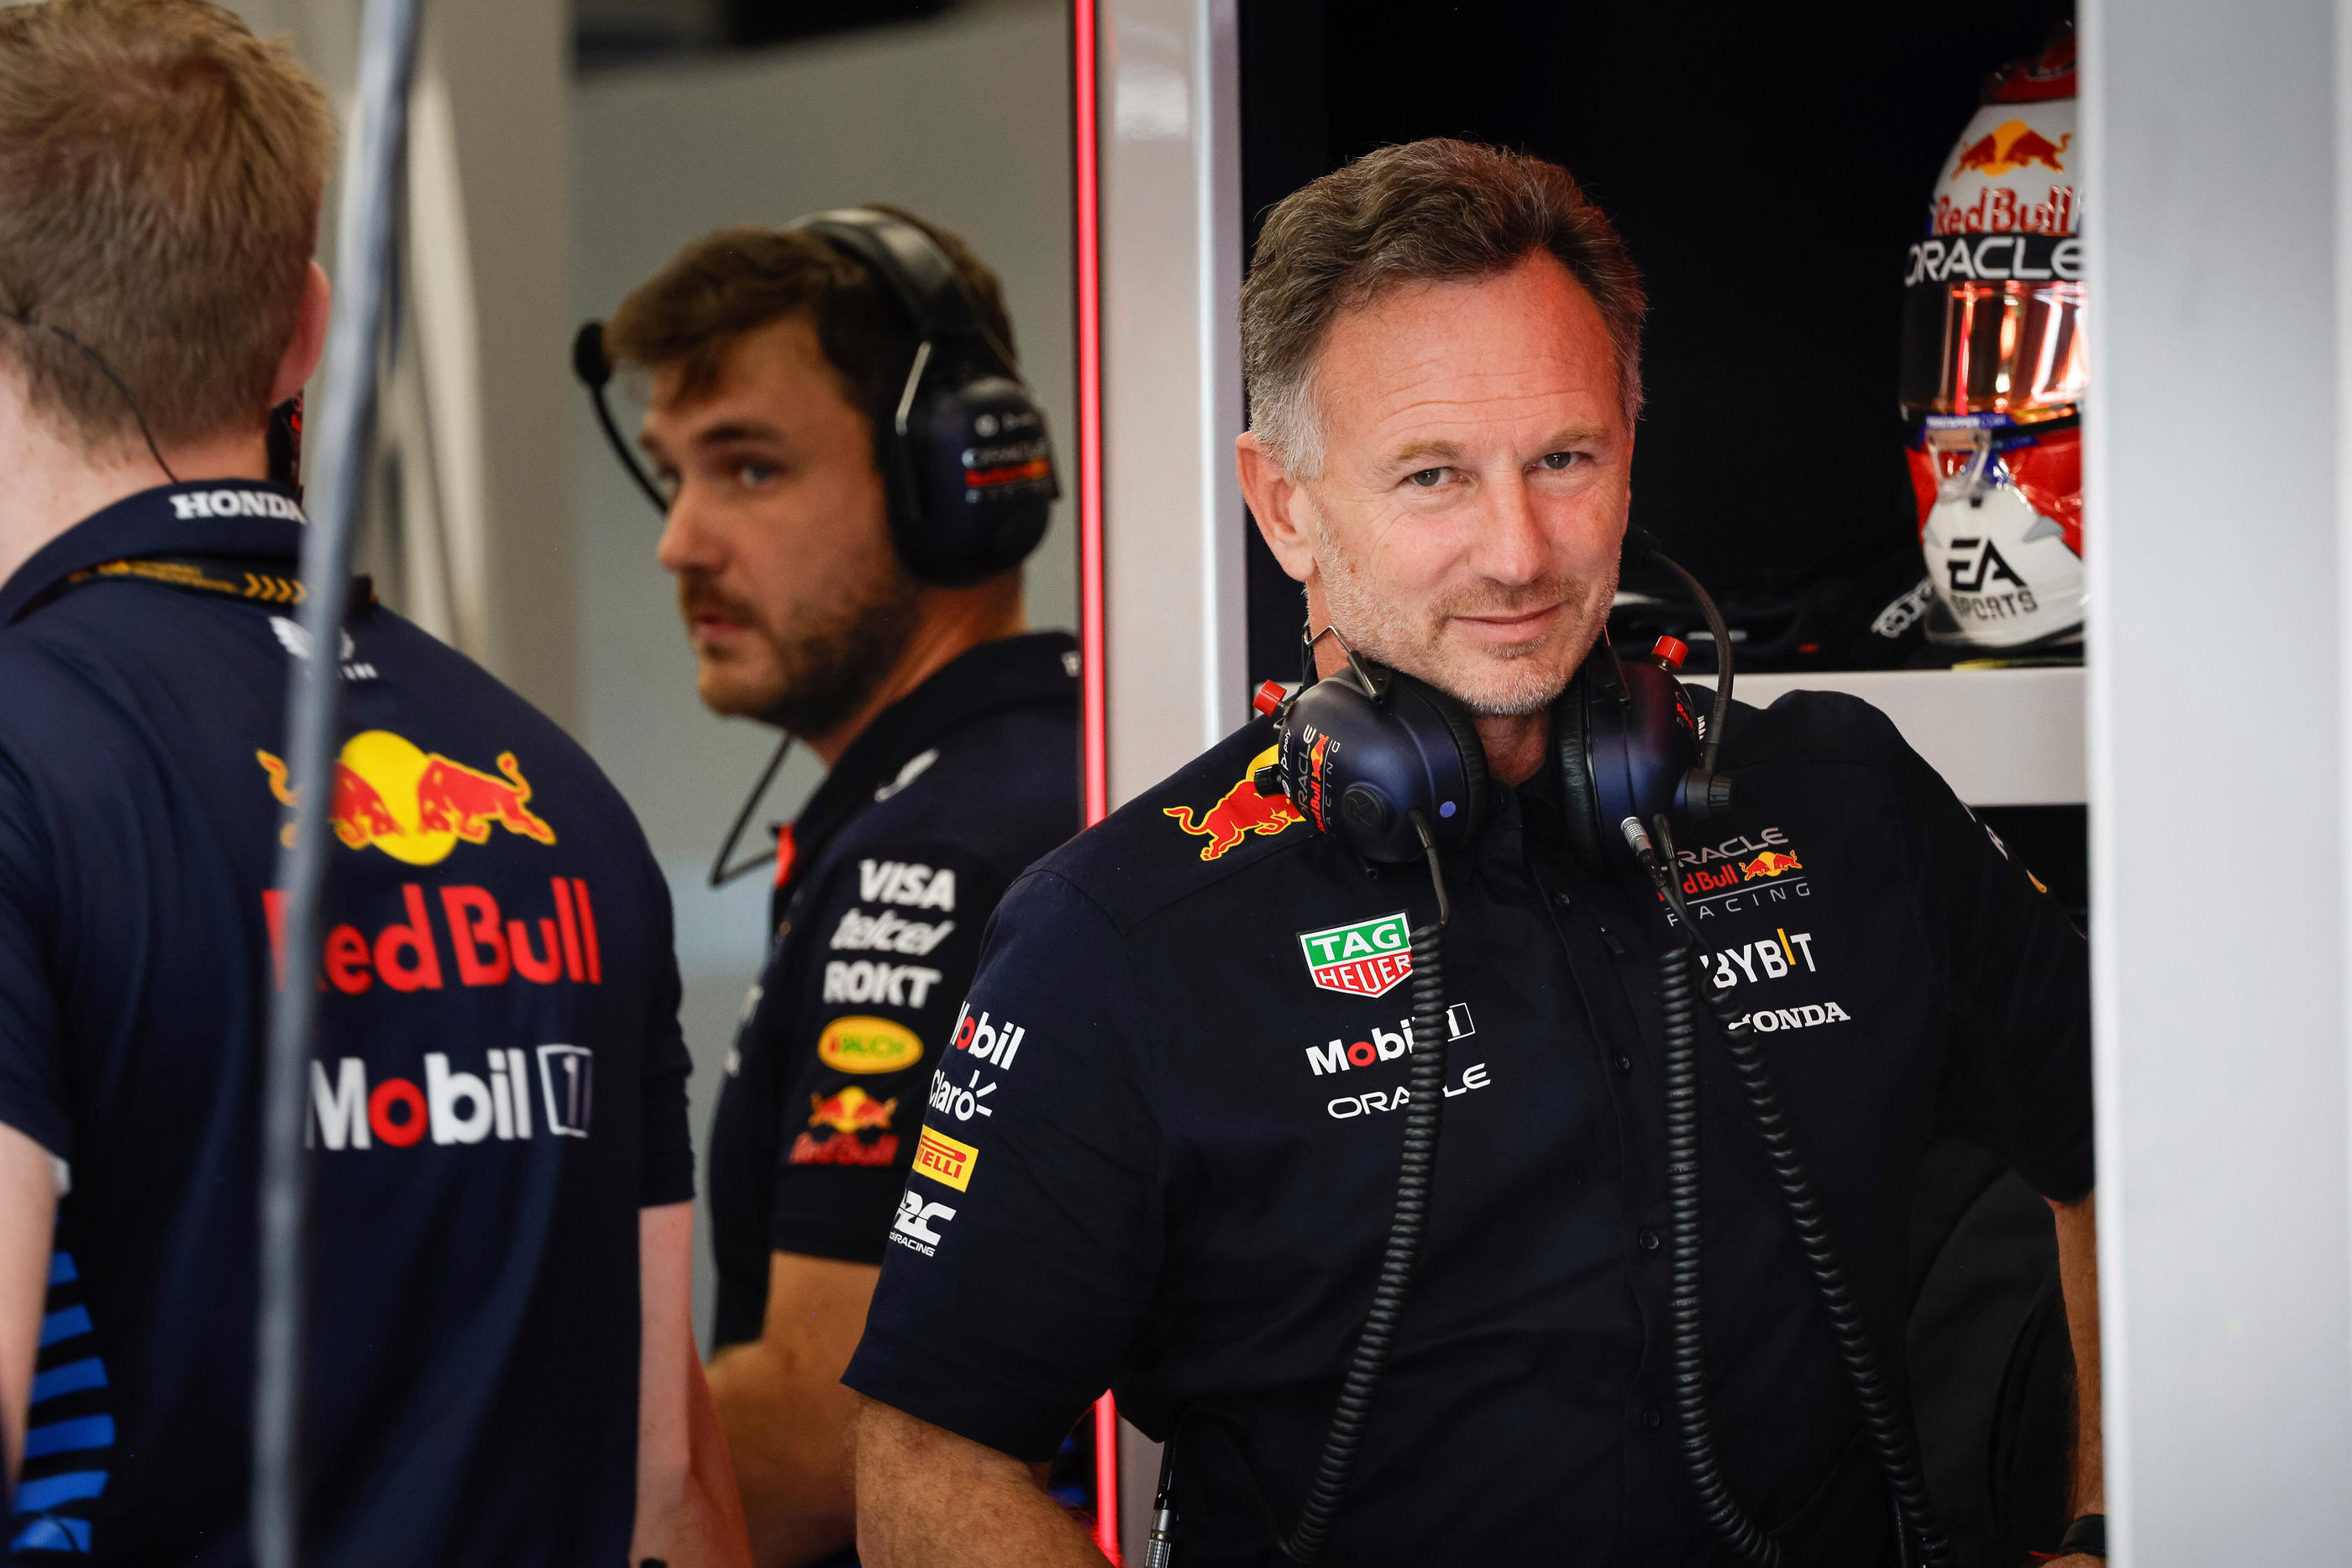 Le patron de Red Bull, Christian Horner, a été blanchi par une enquête interne après avoir été accusé par une employée de l'écurie de "comportement inapproprié". Icon Sport